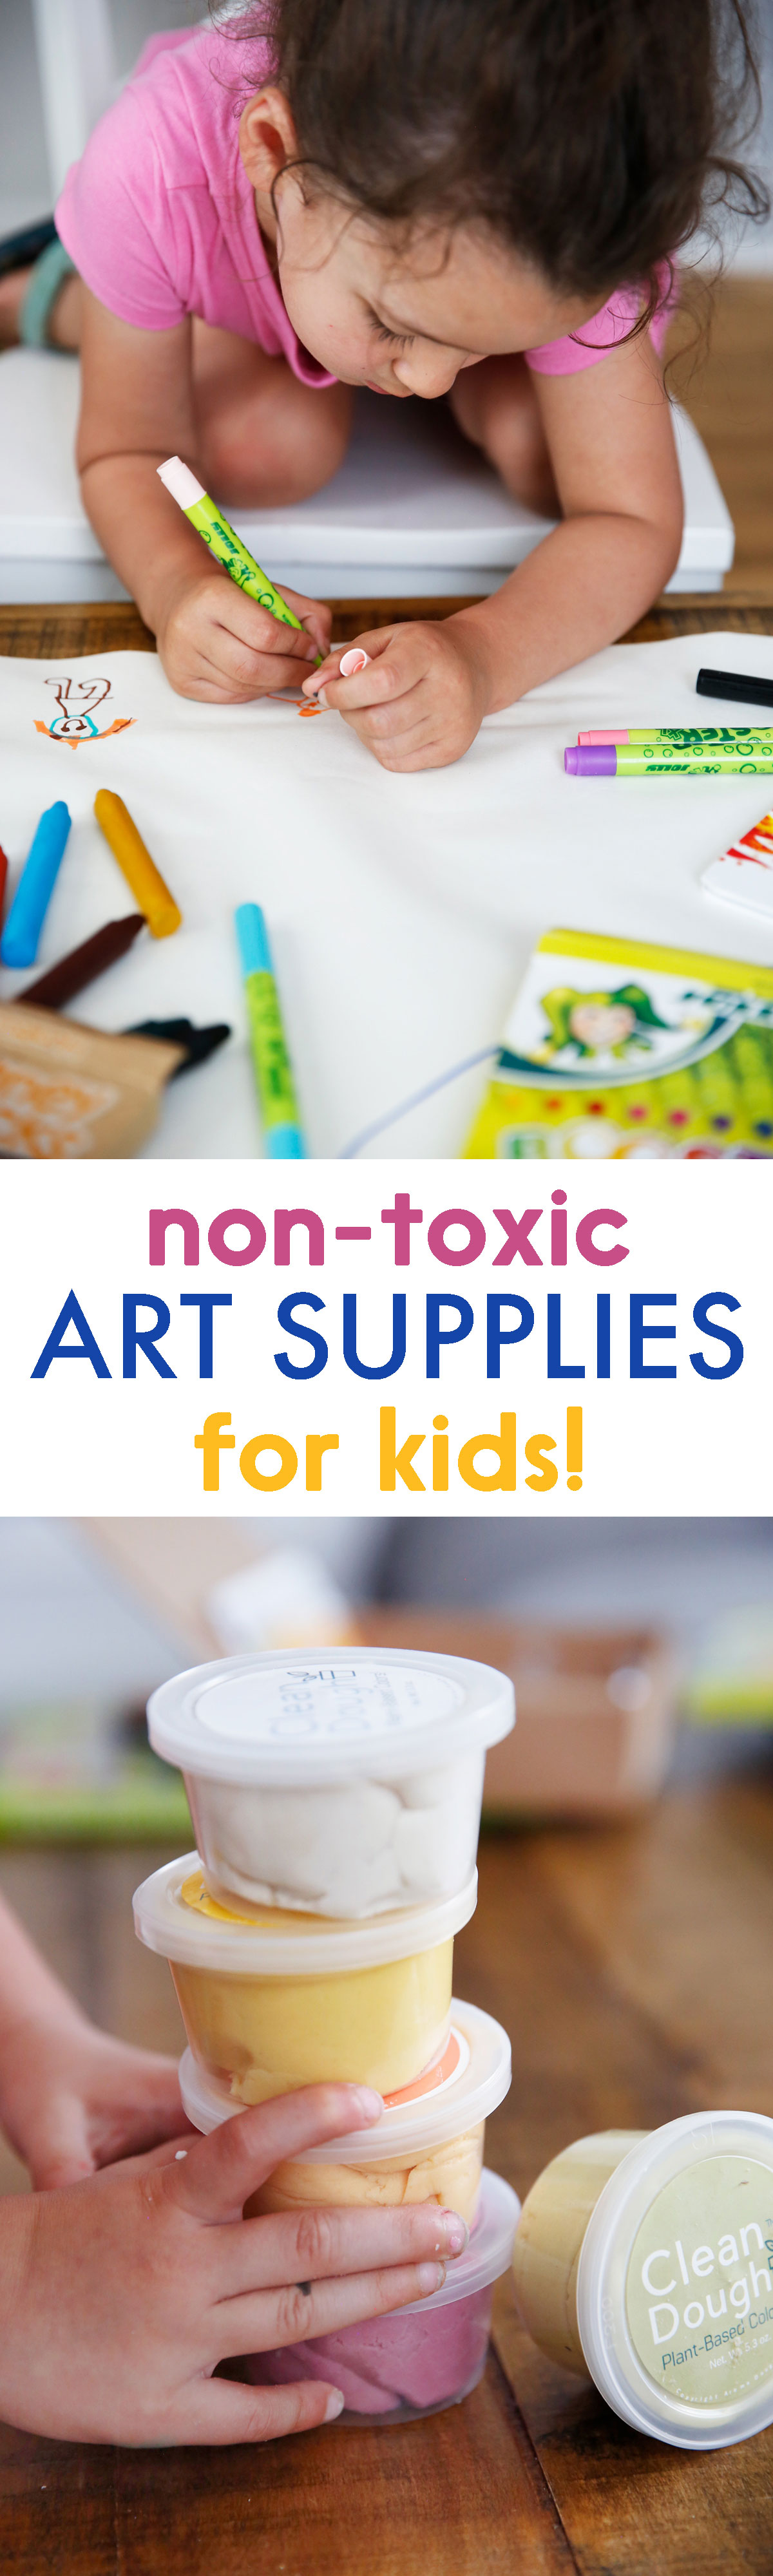 Safer Art Supplies For Kids